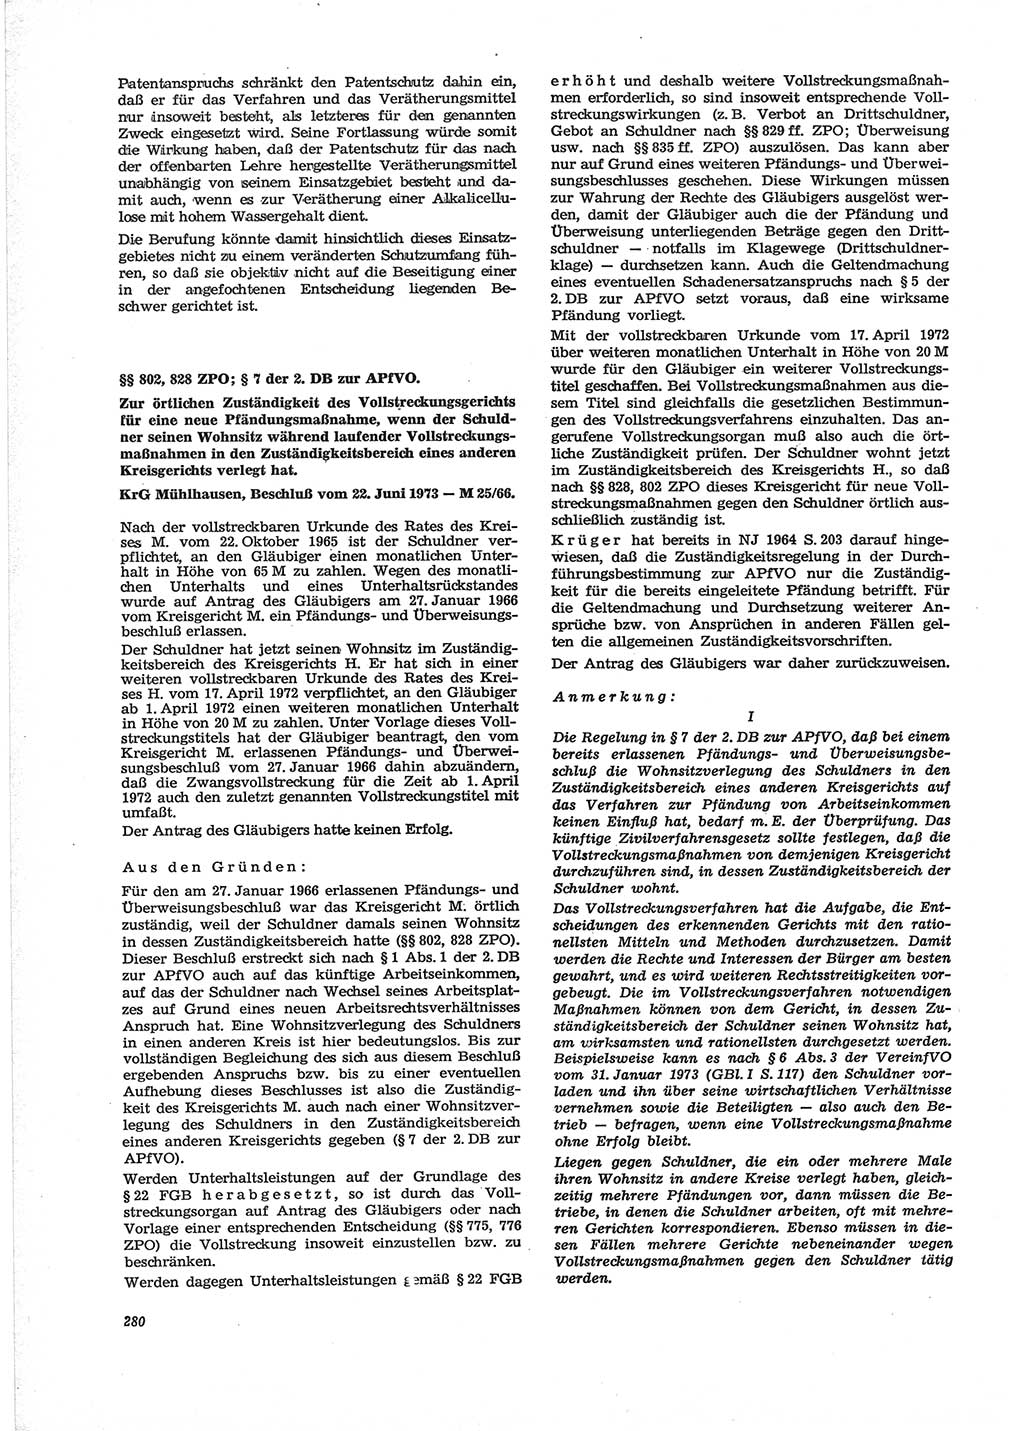 Neue Justiz (NJ), Zeitschrift für Recht und Rechtswissenschaft [Deutsche Demokratische Republik (DDR)], 28. Jahrgang 1974, Seite 280 (NJ DDR 1974, S. 280)